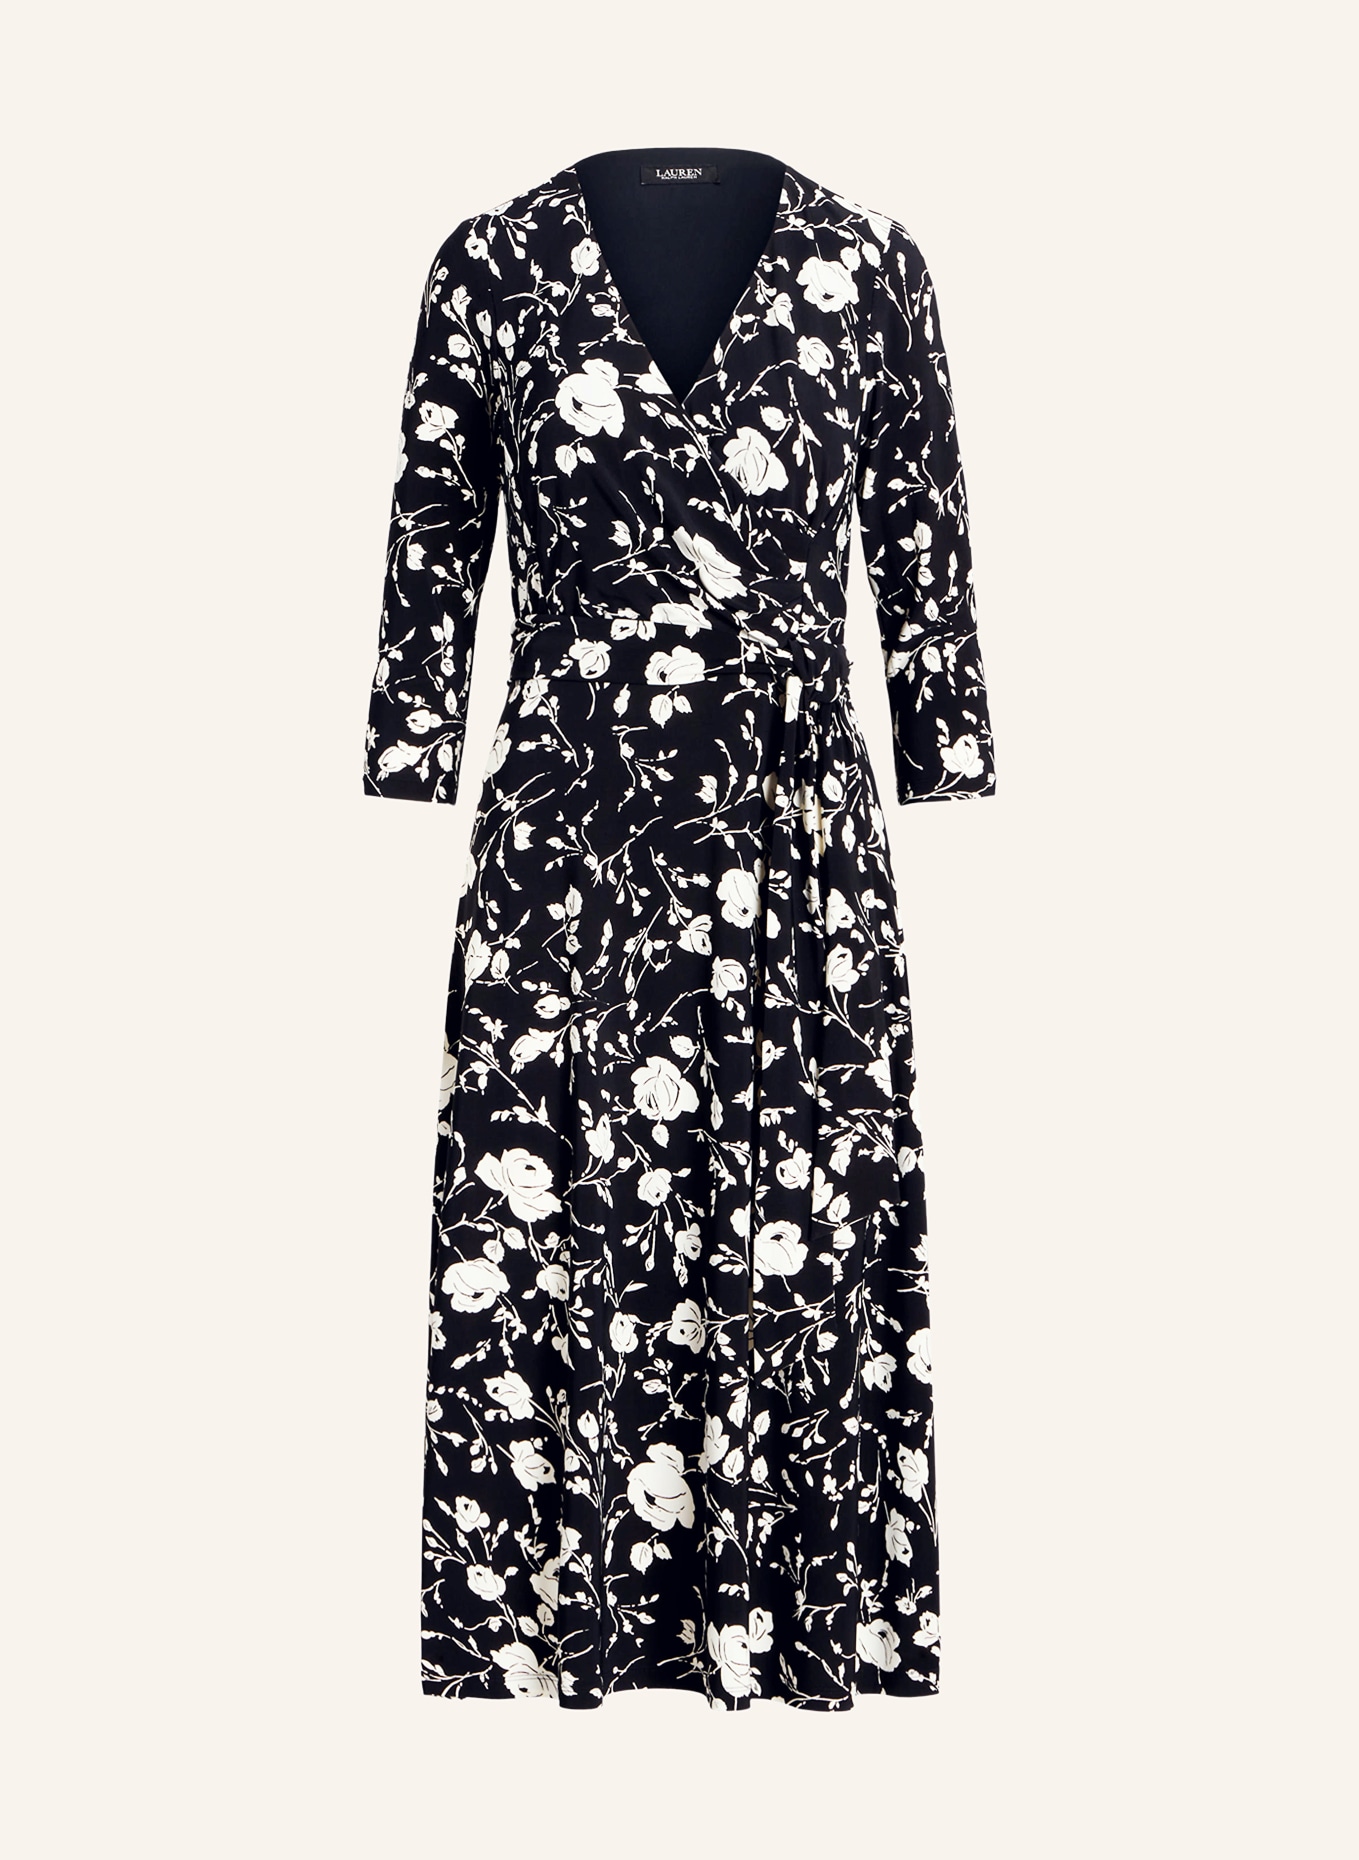 LAUREN RALPH LAUREN Jersey dress with 3/4 sleeves, Color: BLACK/ WHITE (Image 1)